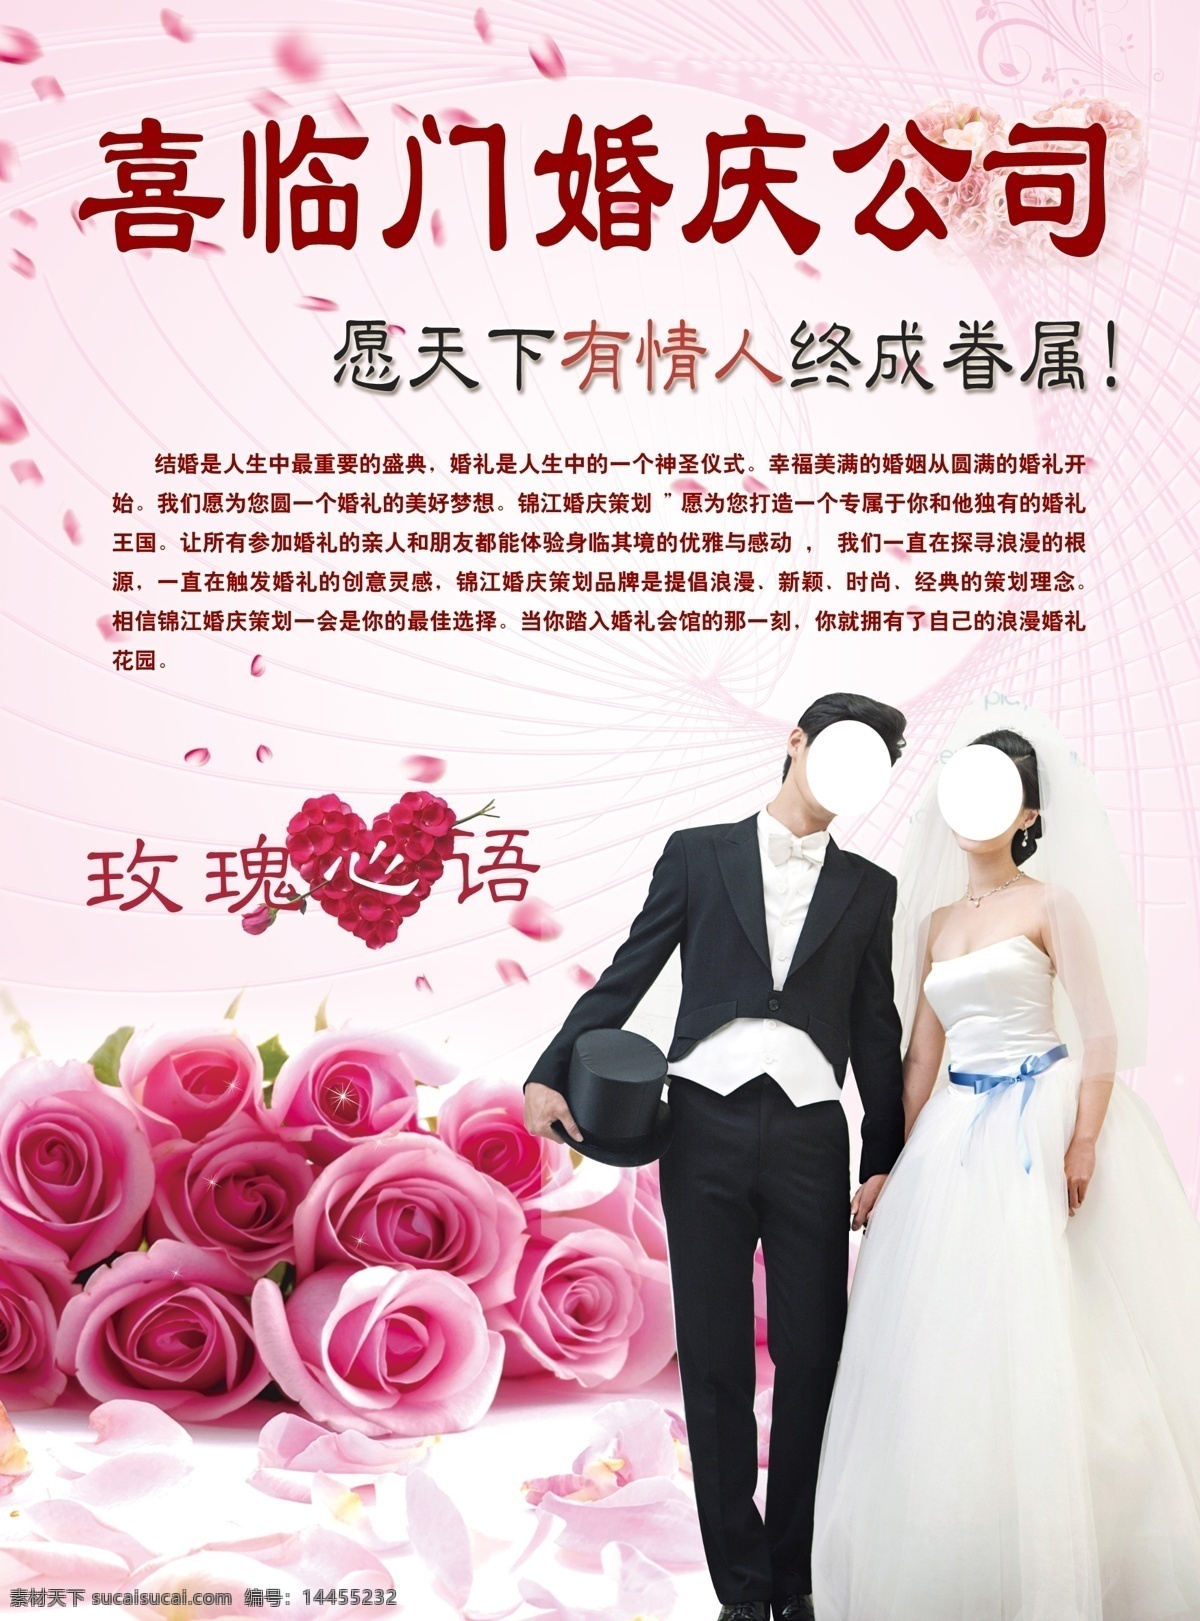 婚庆宣传单 婚庆彩页 海报 粉紫色背景 花 新娘新郎 婚纱照